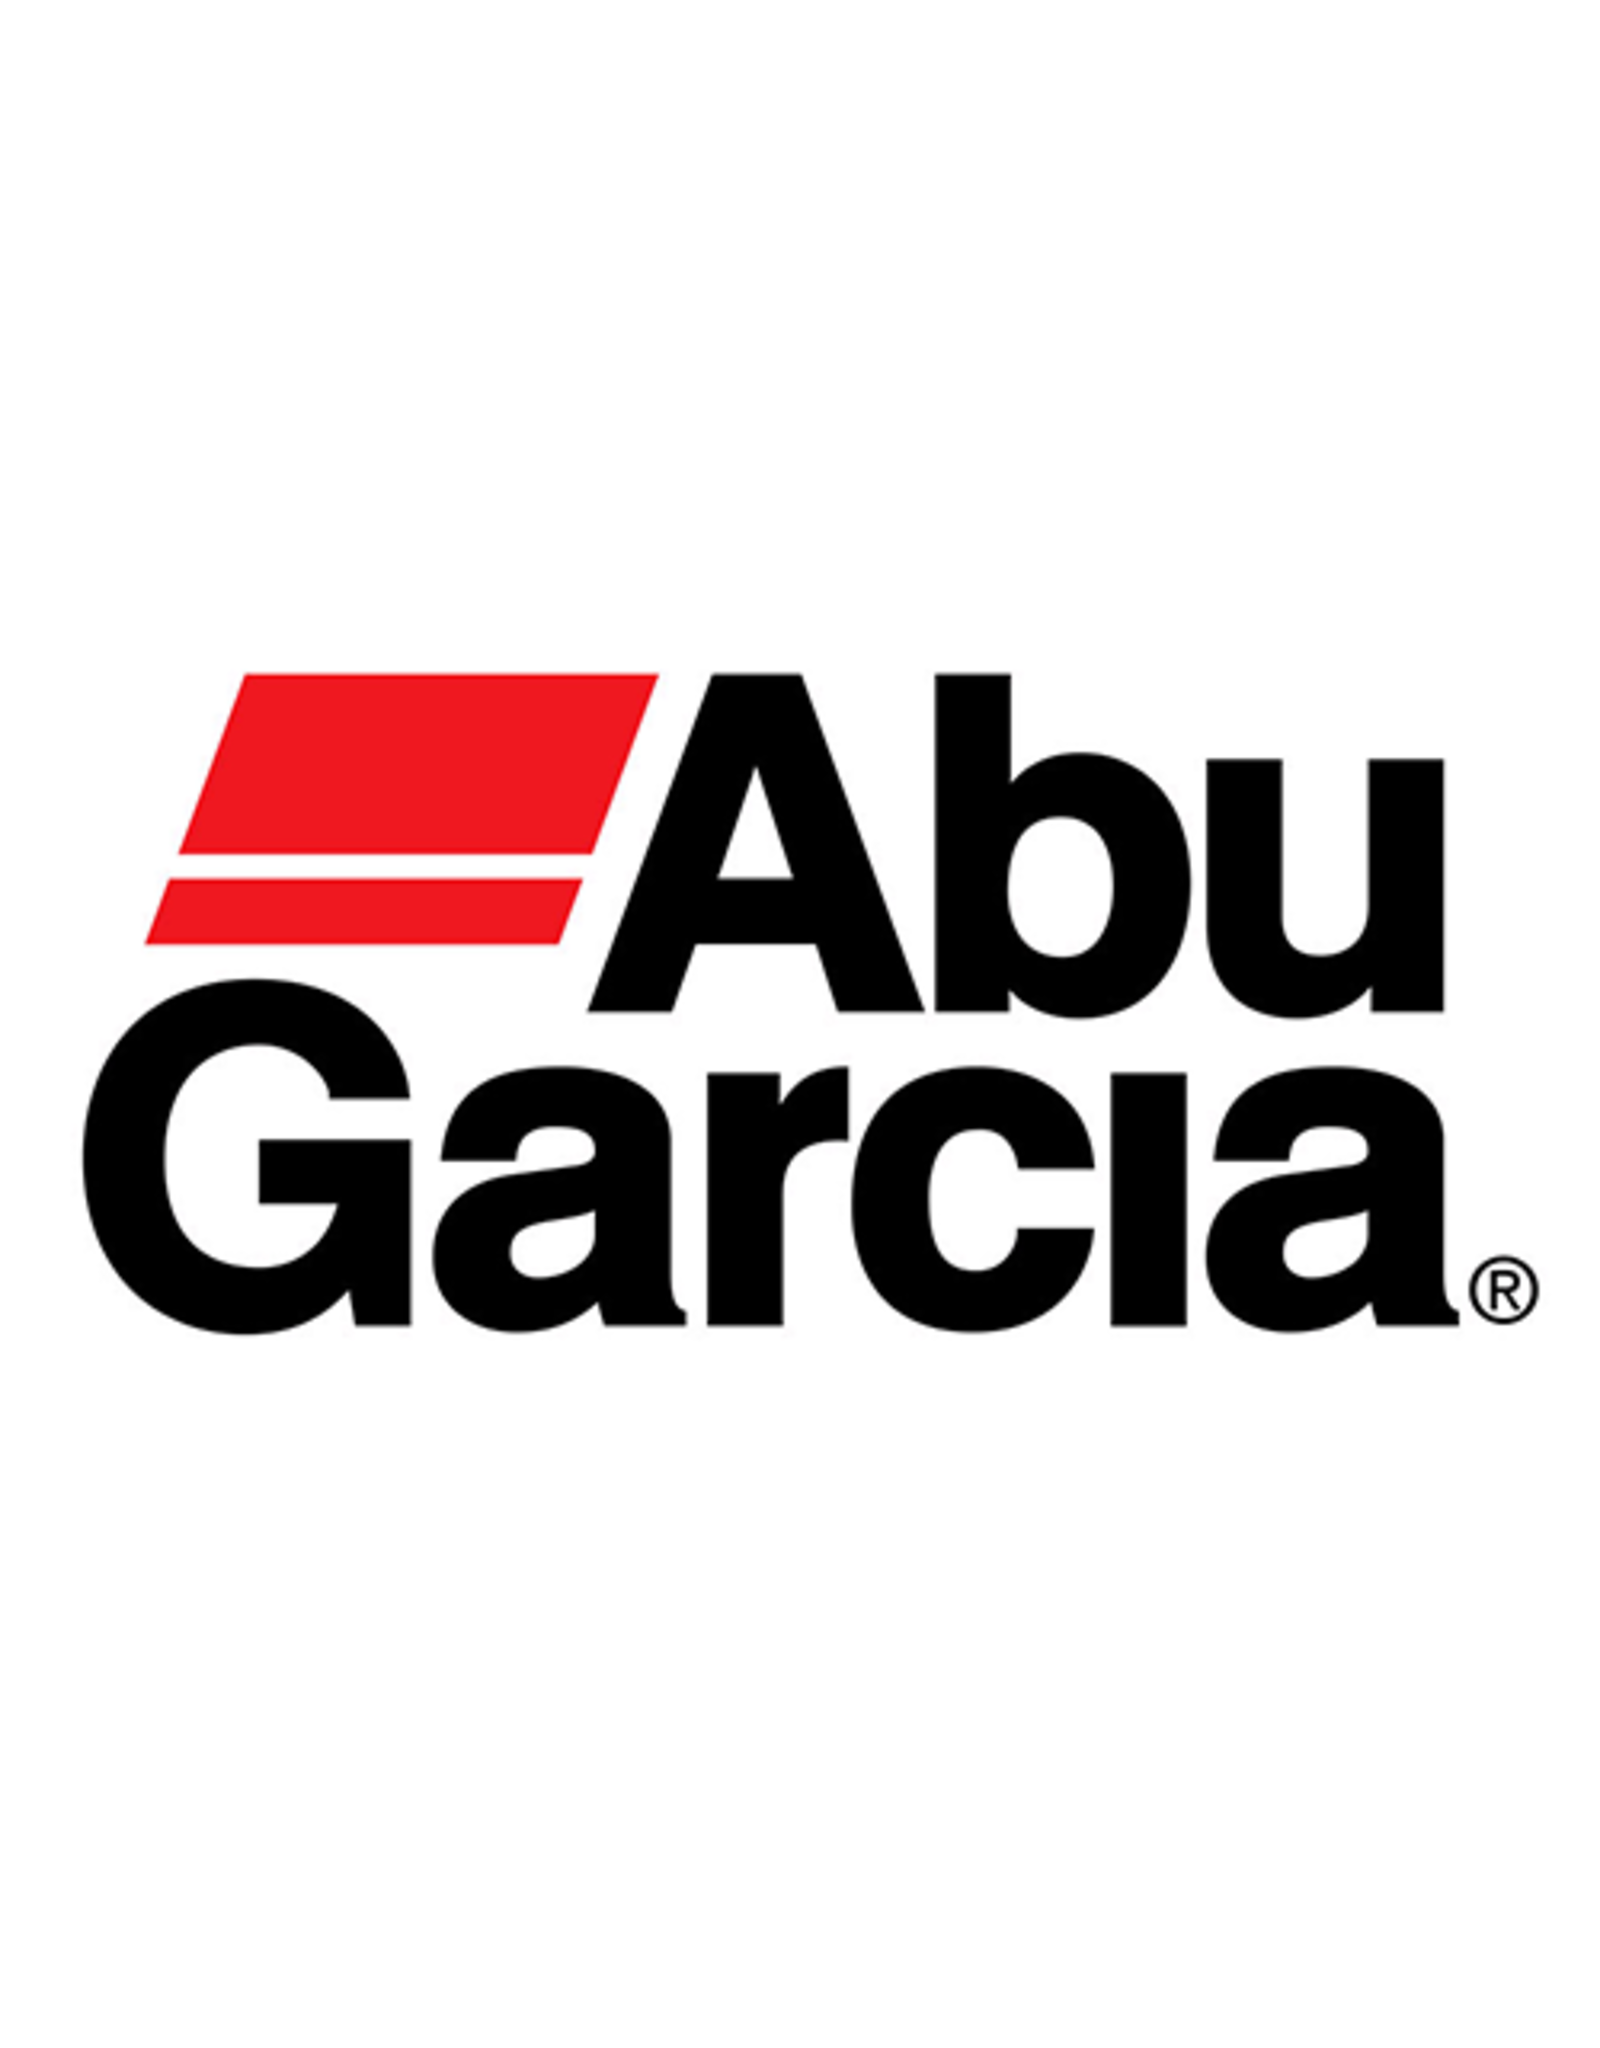 Abu Garcia 1415761  BRAKE WEIGHT HOLDER